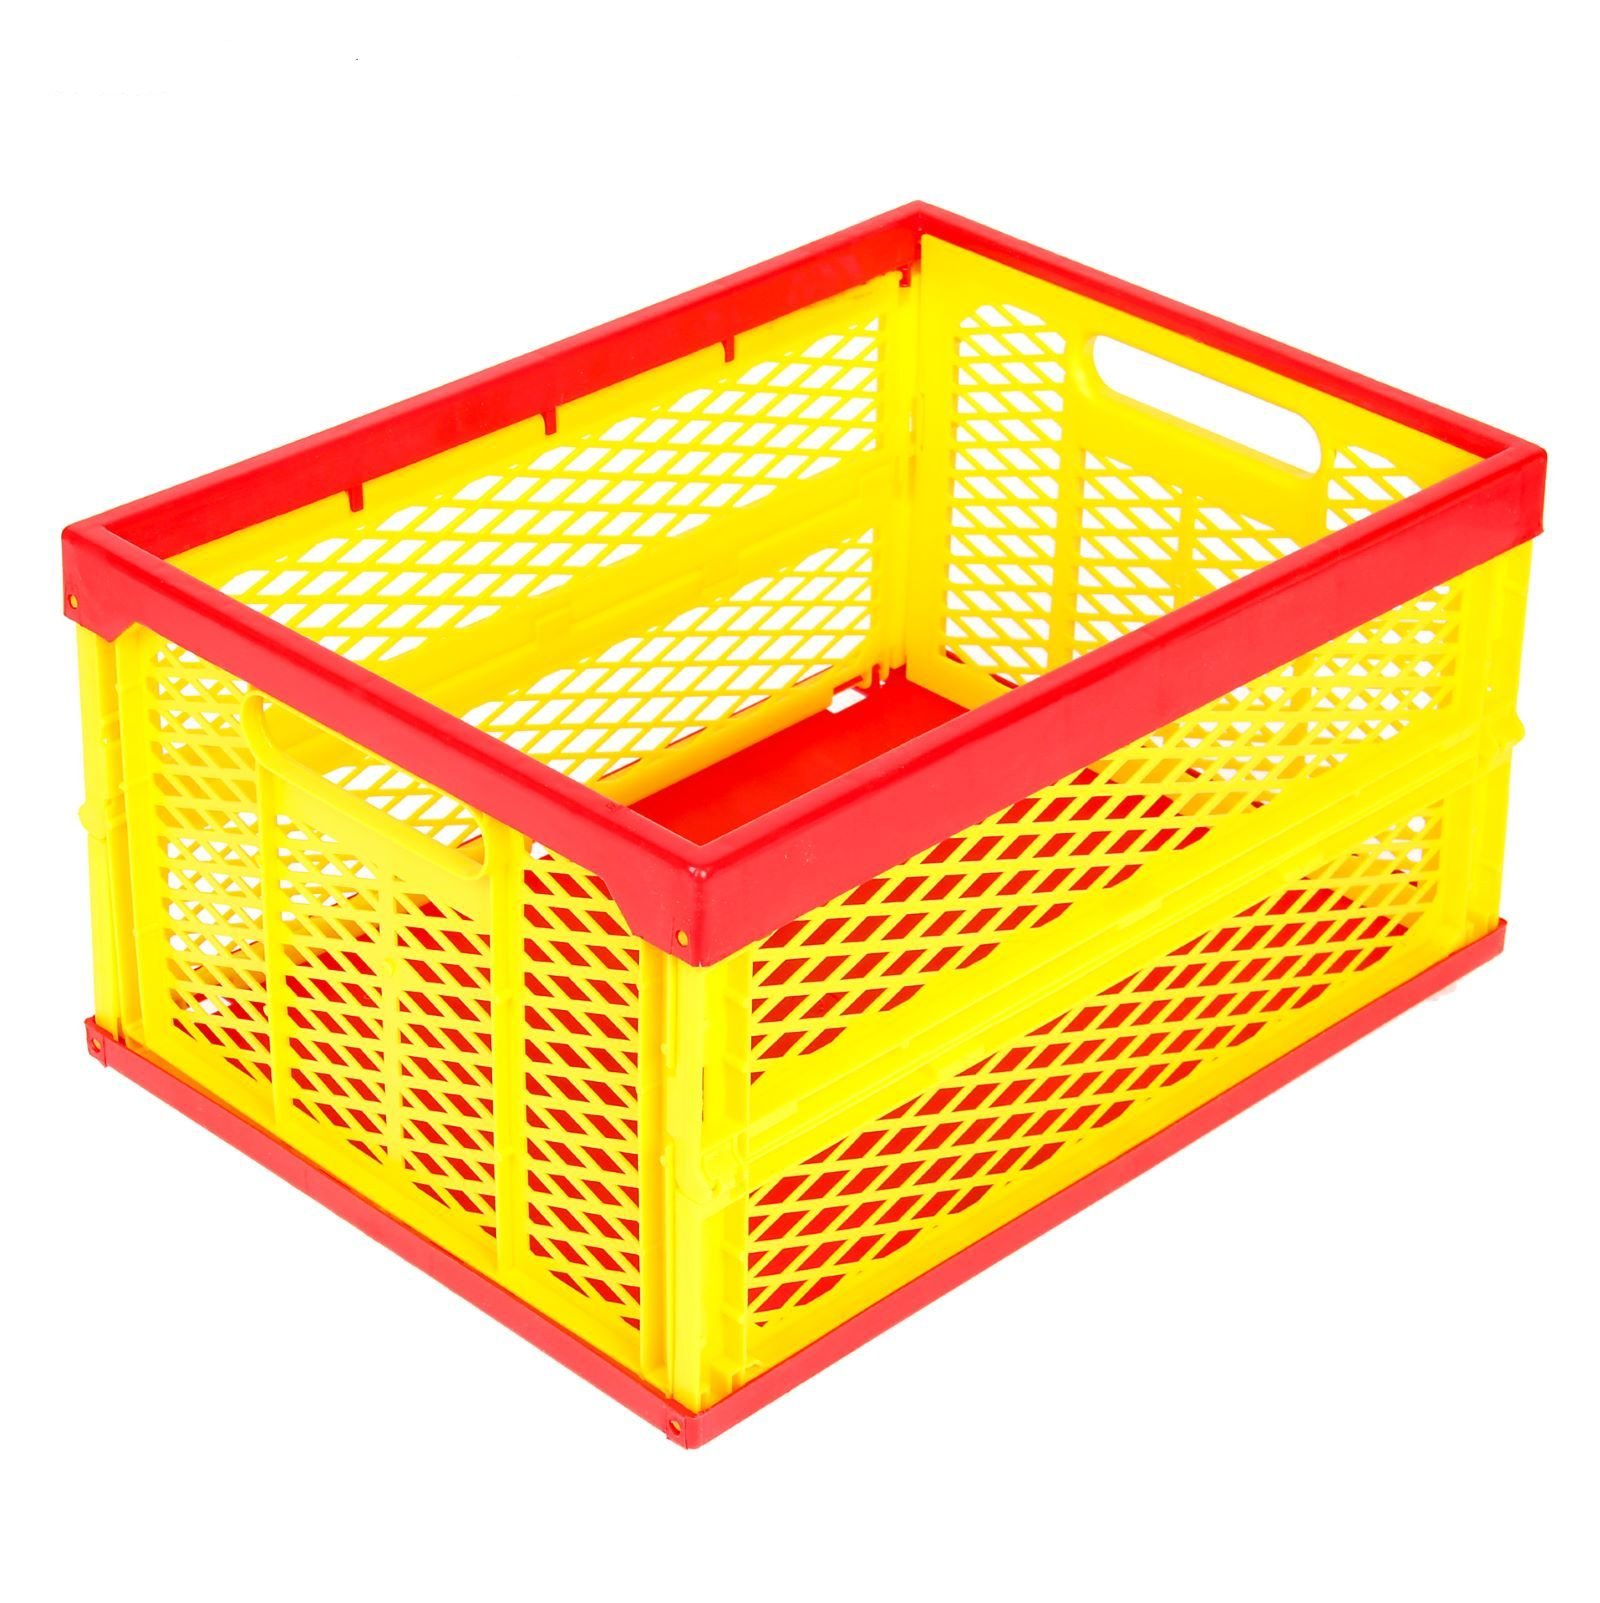 Купить ящики в рязани. Ящик MYSTORYHOME Toys 45х30х25 см. Складной ящик для игрушек. Ящик для игрушек желтый. Ящик для игрушек пластиковый.